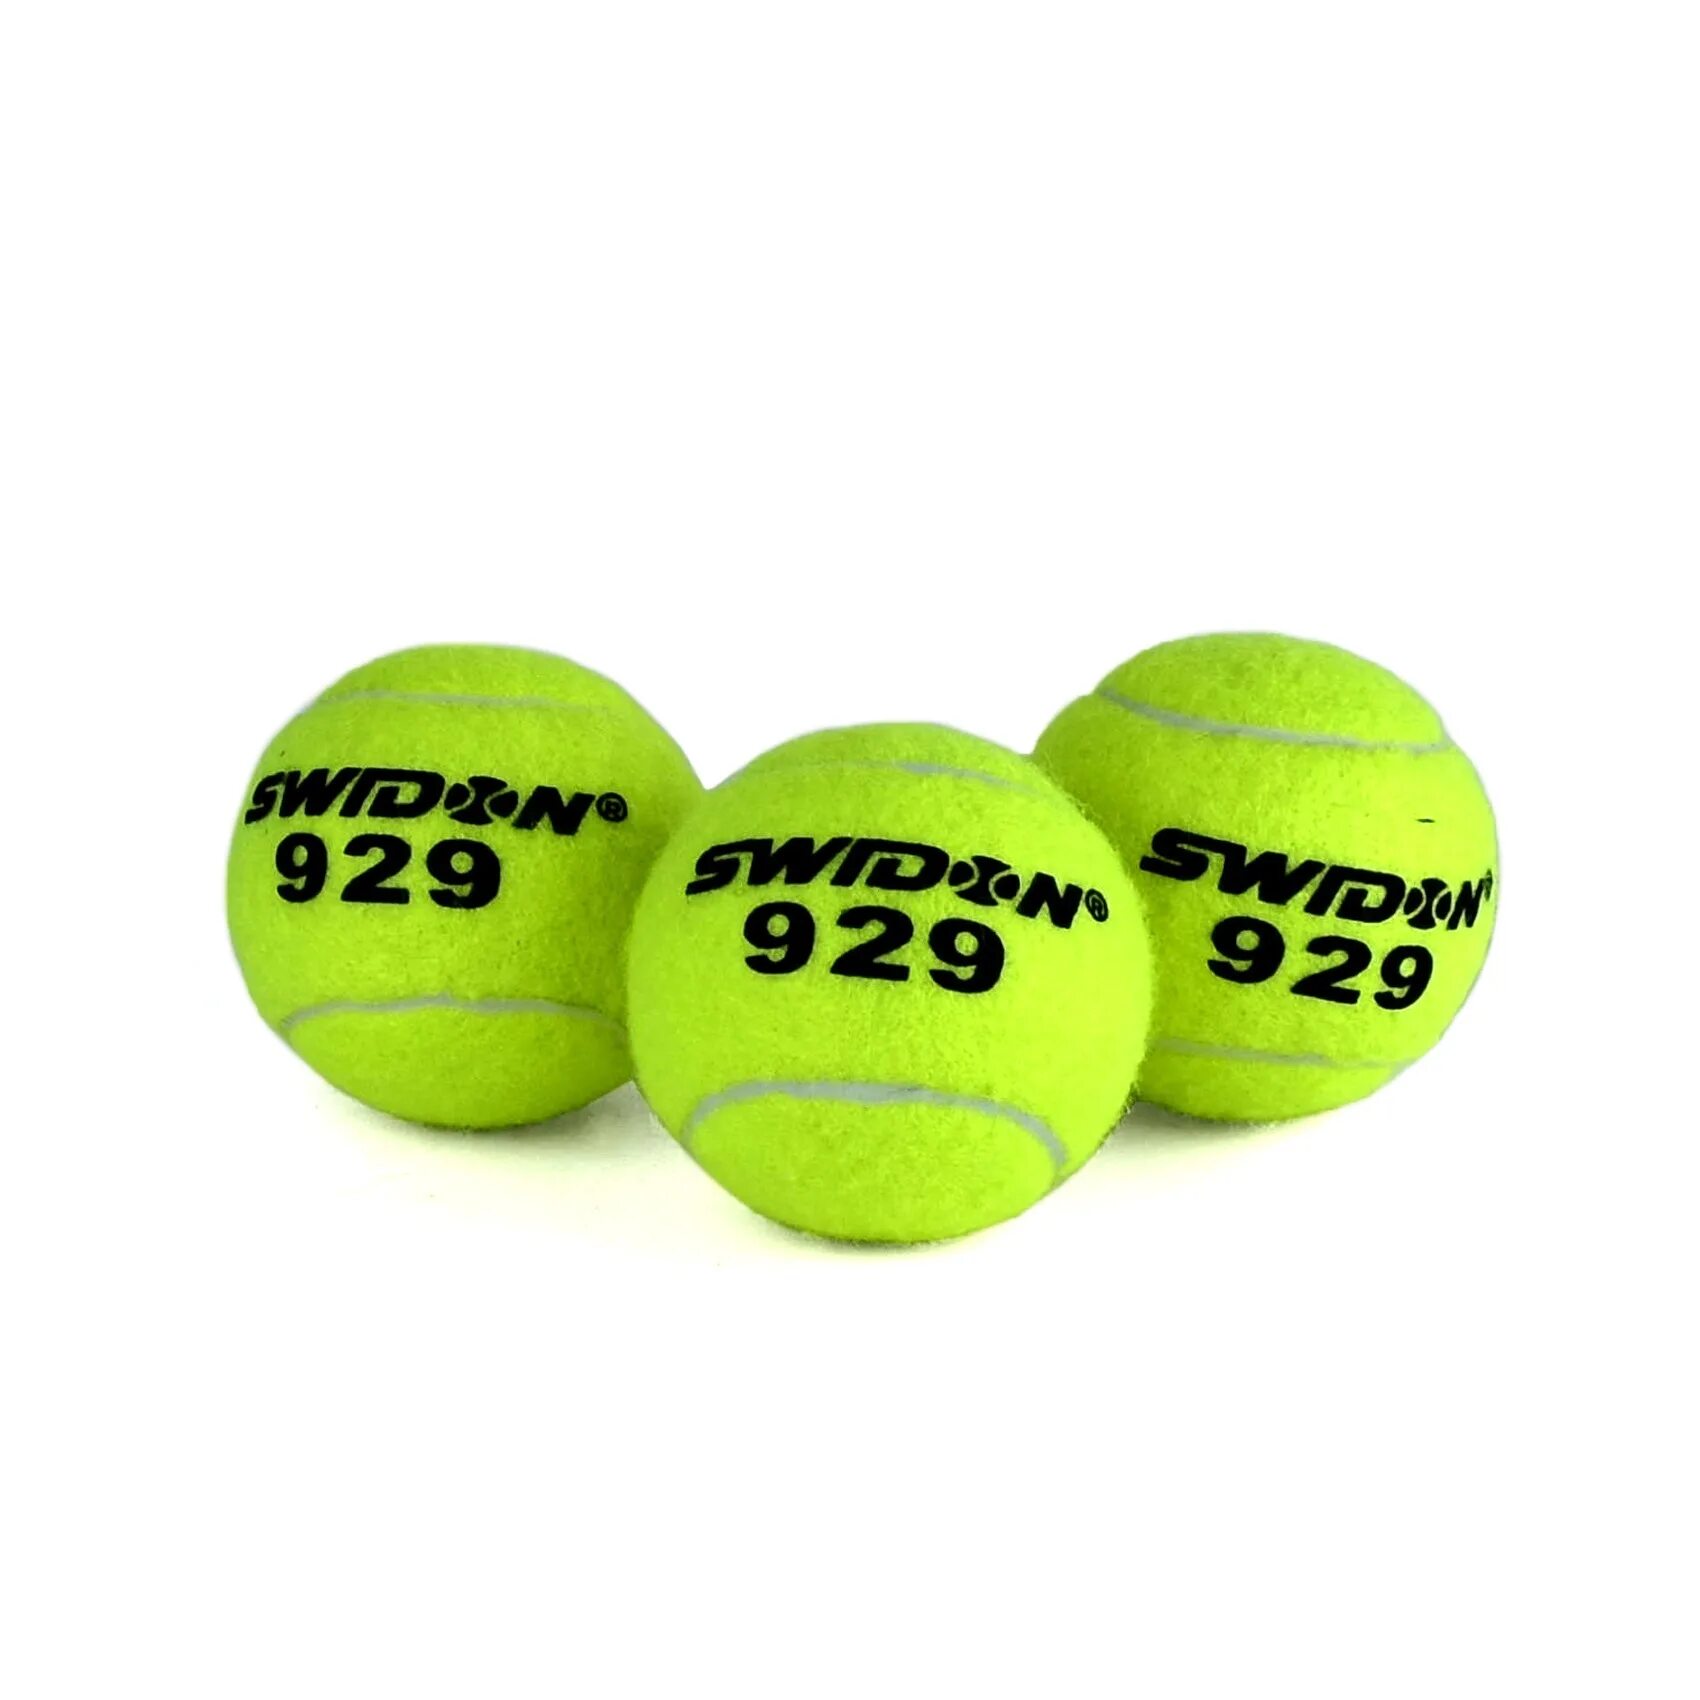 Мяч теннисный Cliff swidon 929. Мяч для большого тенниса swidon s-909/1 1 шт. Мячи для большого тенниса swidon 909. Мяч большого тенниса Cliff 969. Мячи б т